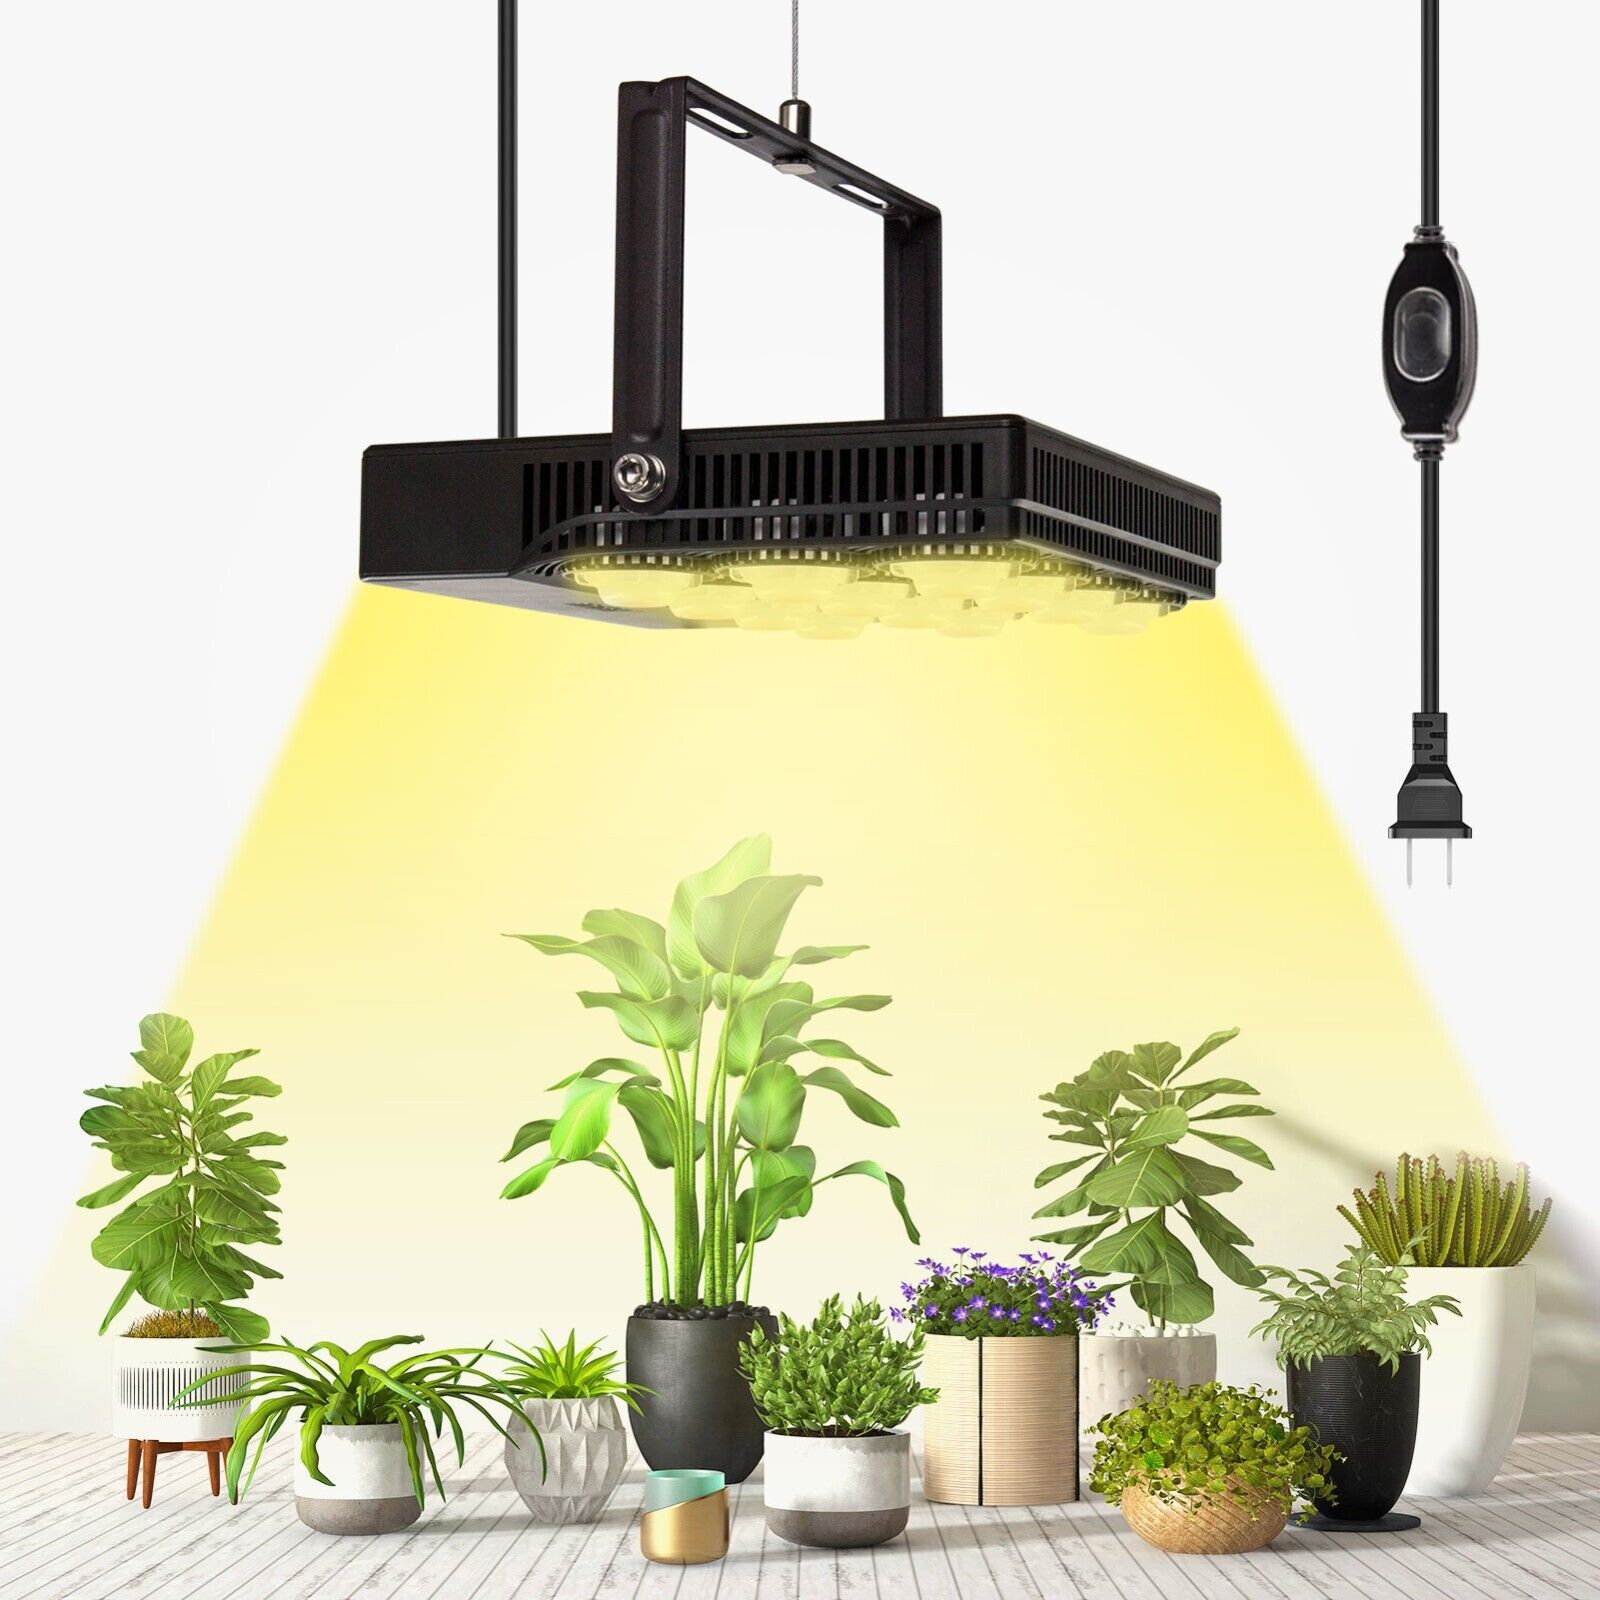 SANSI 700W Equivalent LED Plant Grow Light Veg Bloom Full Spectrum PPF 112umol/s